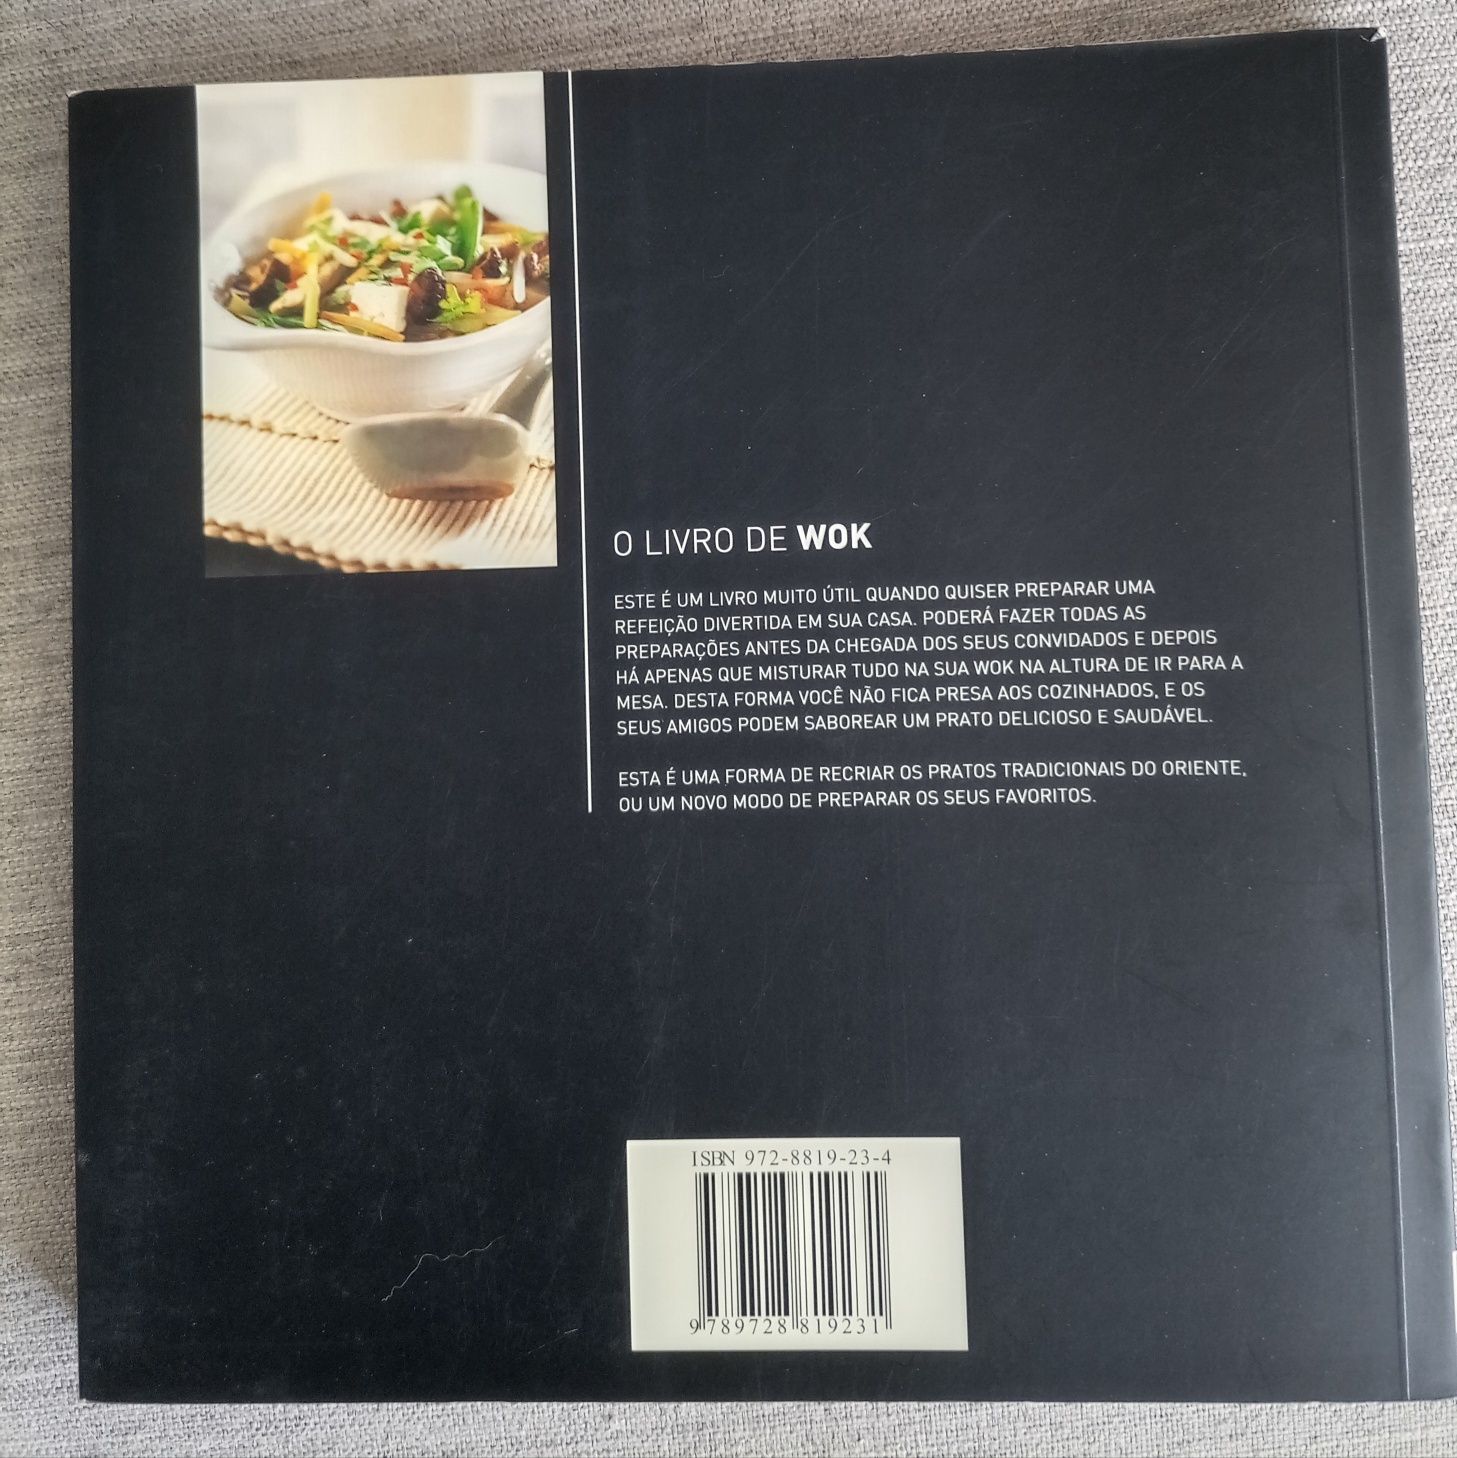 Livro de Wok (receitas frescas e deliciosas)